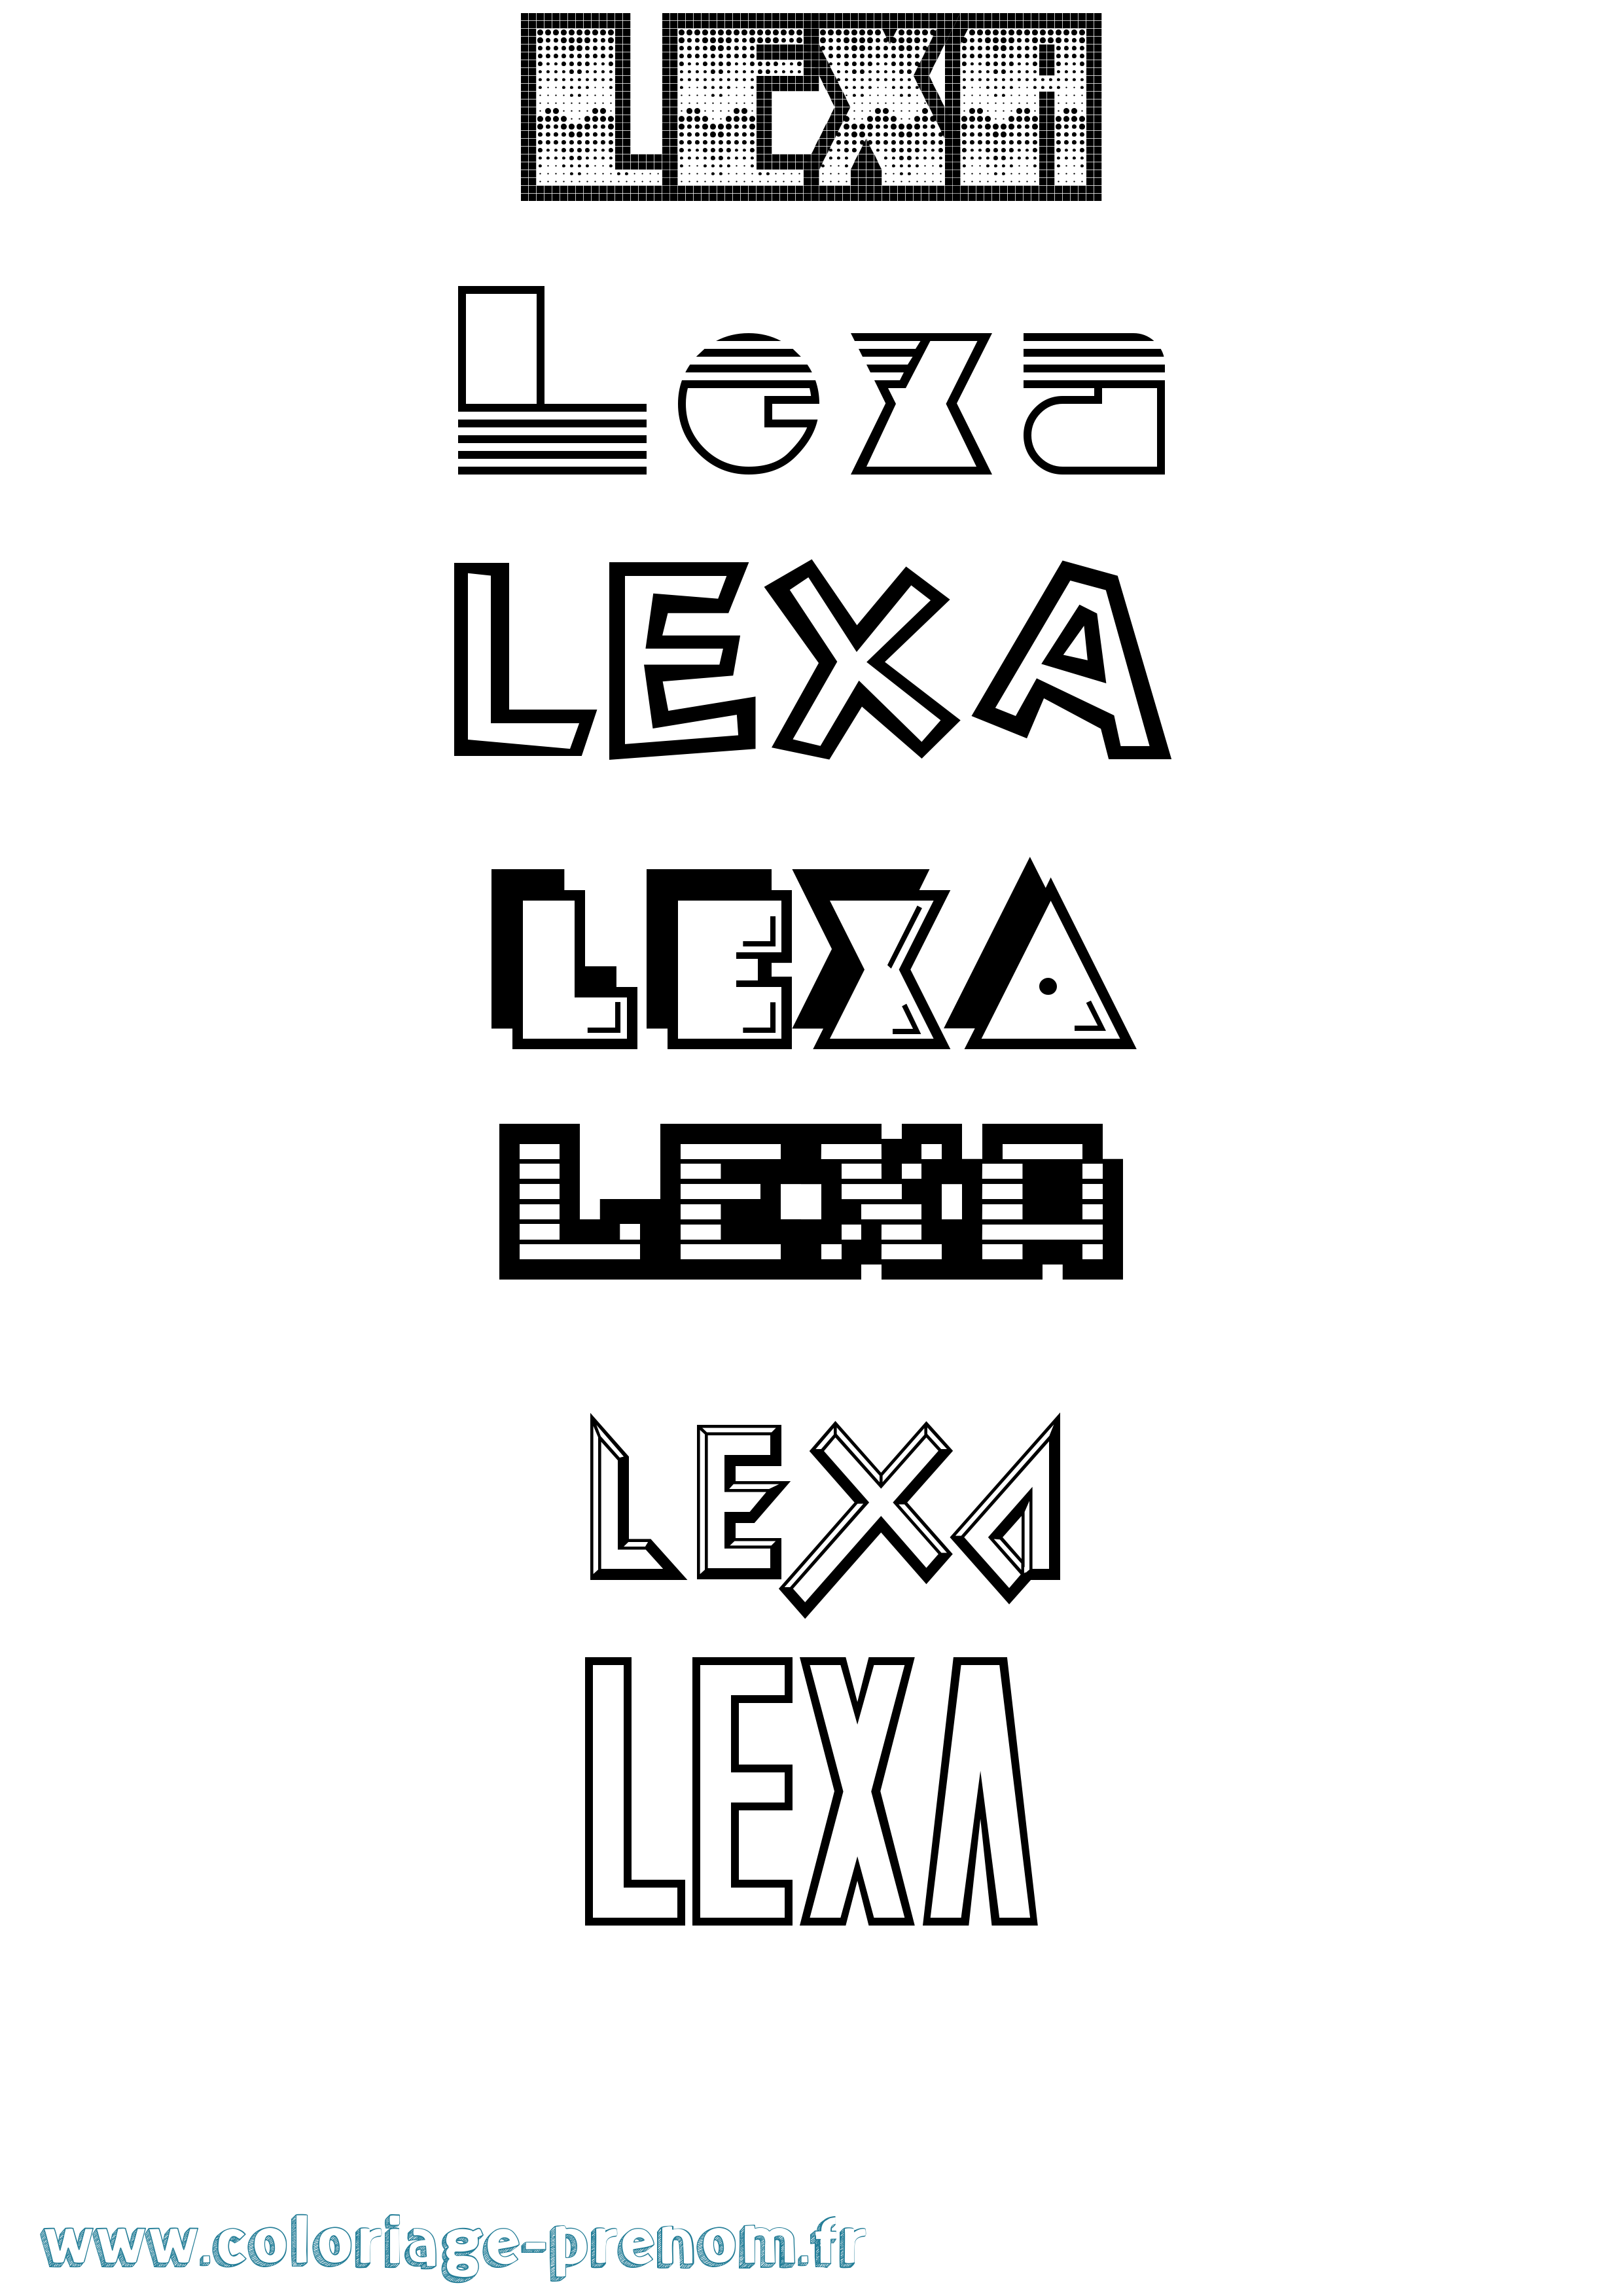 Coloriage prénom Lexa Jeux Vidéos